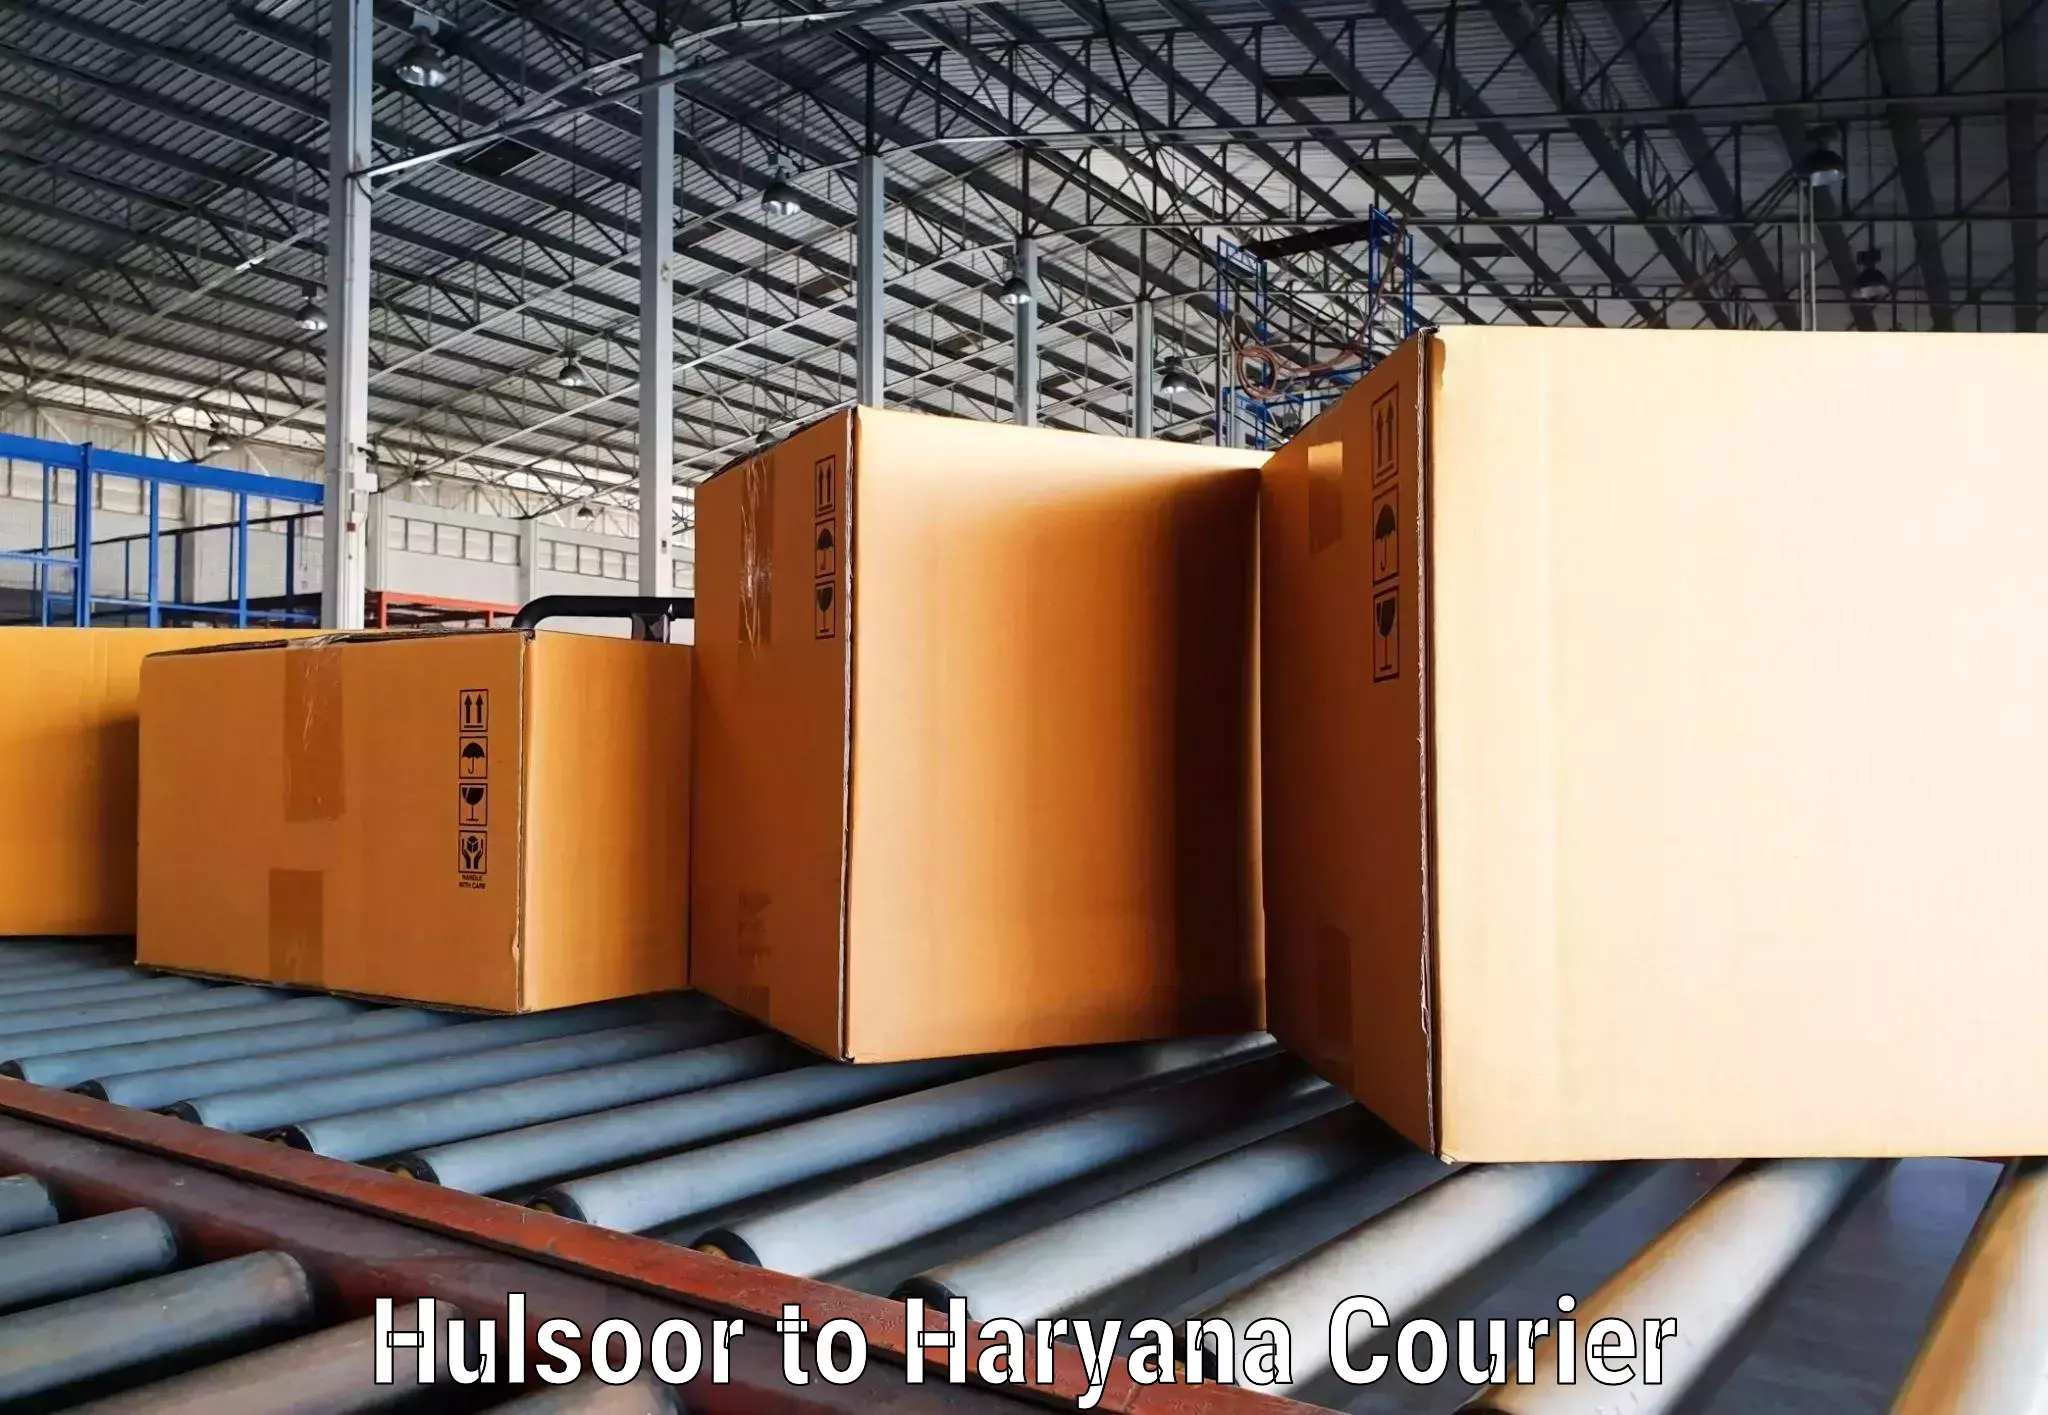 Holiday shipping services Hulsoor to Haryana